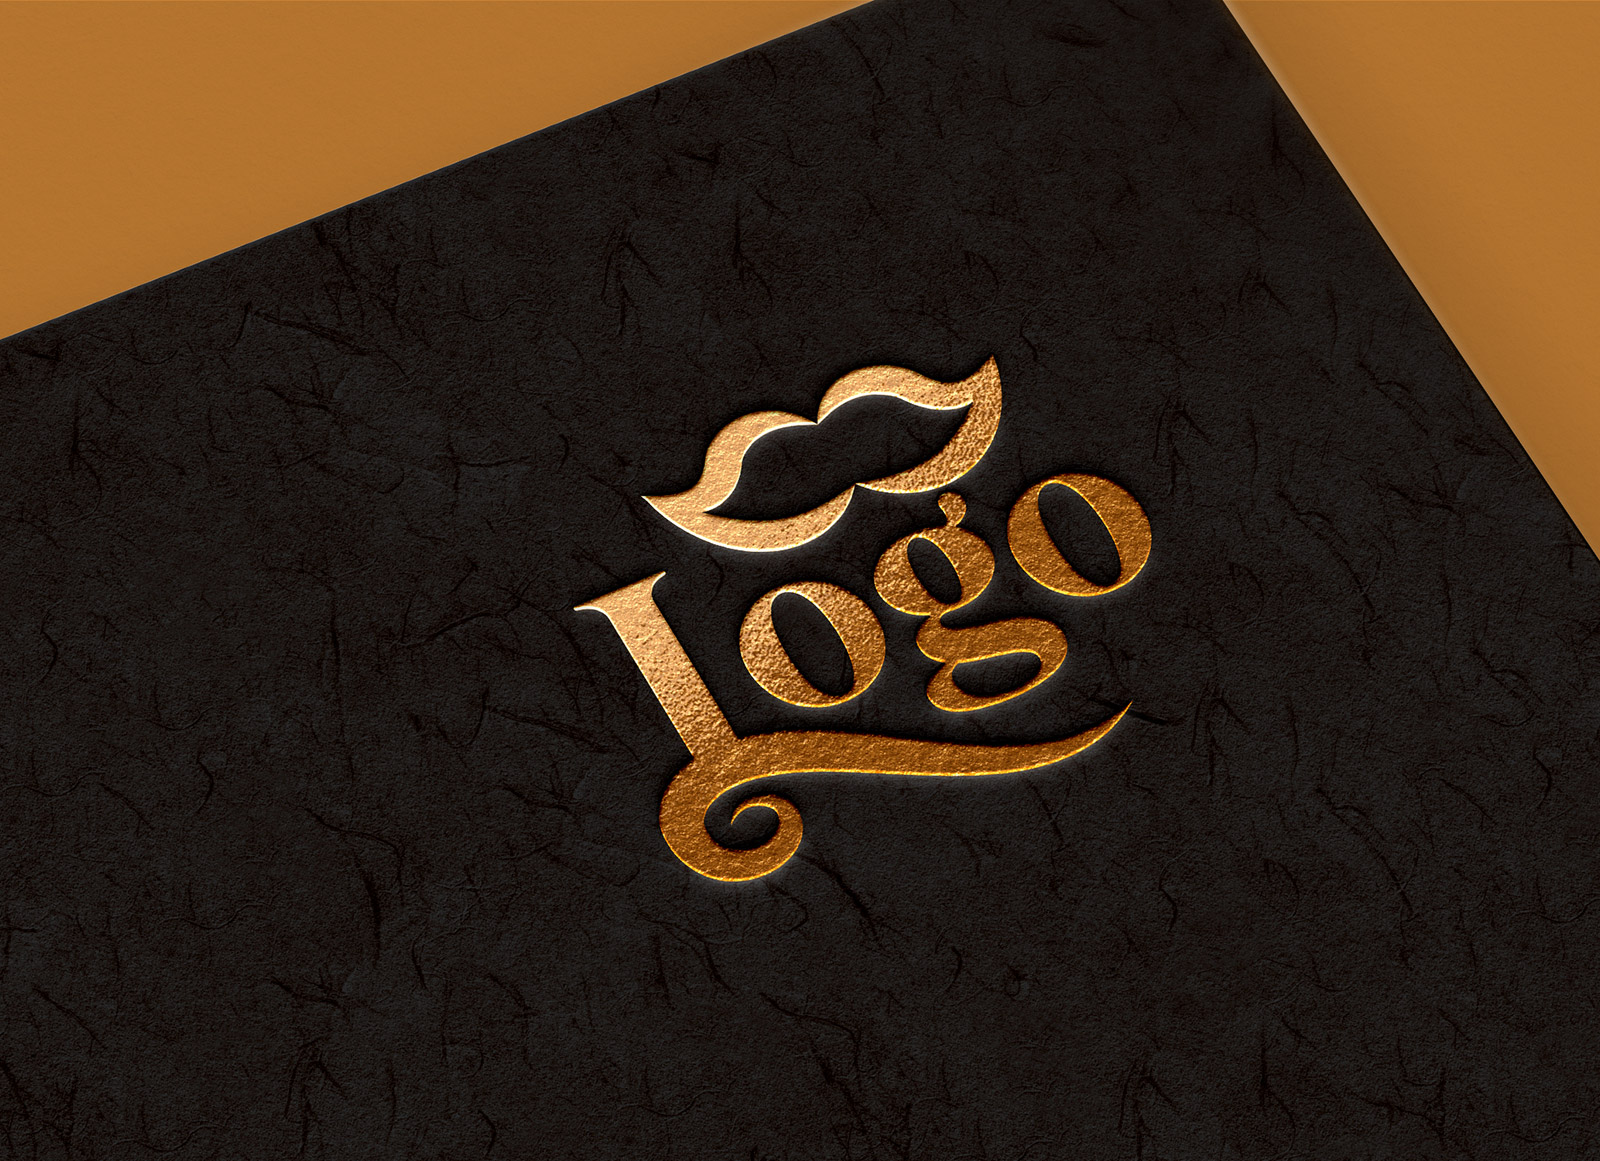 Maquette de logo en feuille d'or sur carte texturée